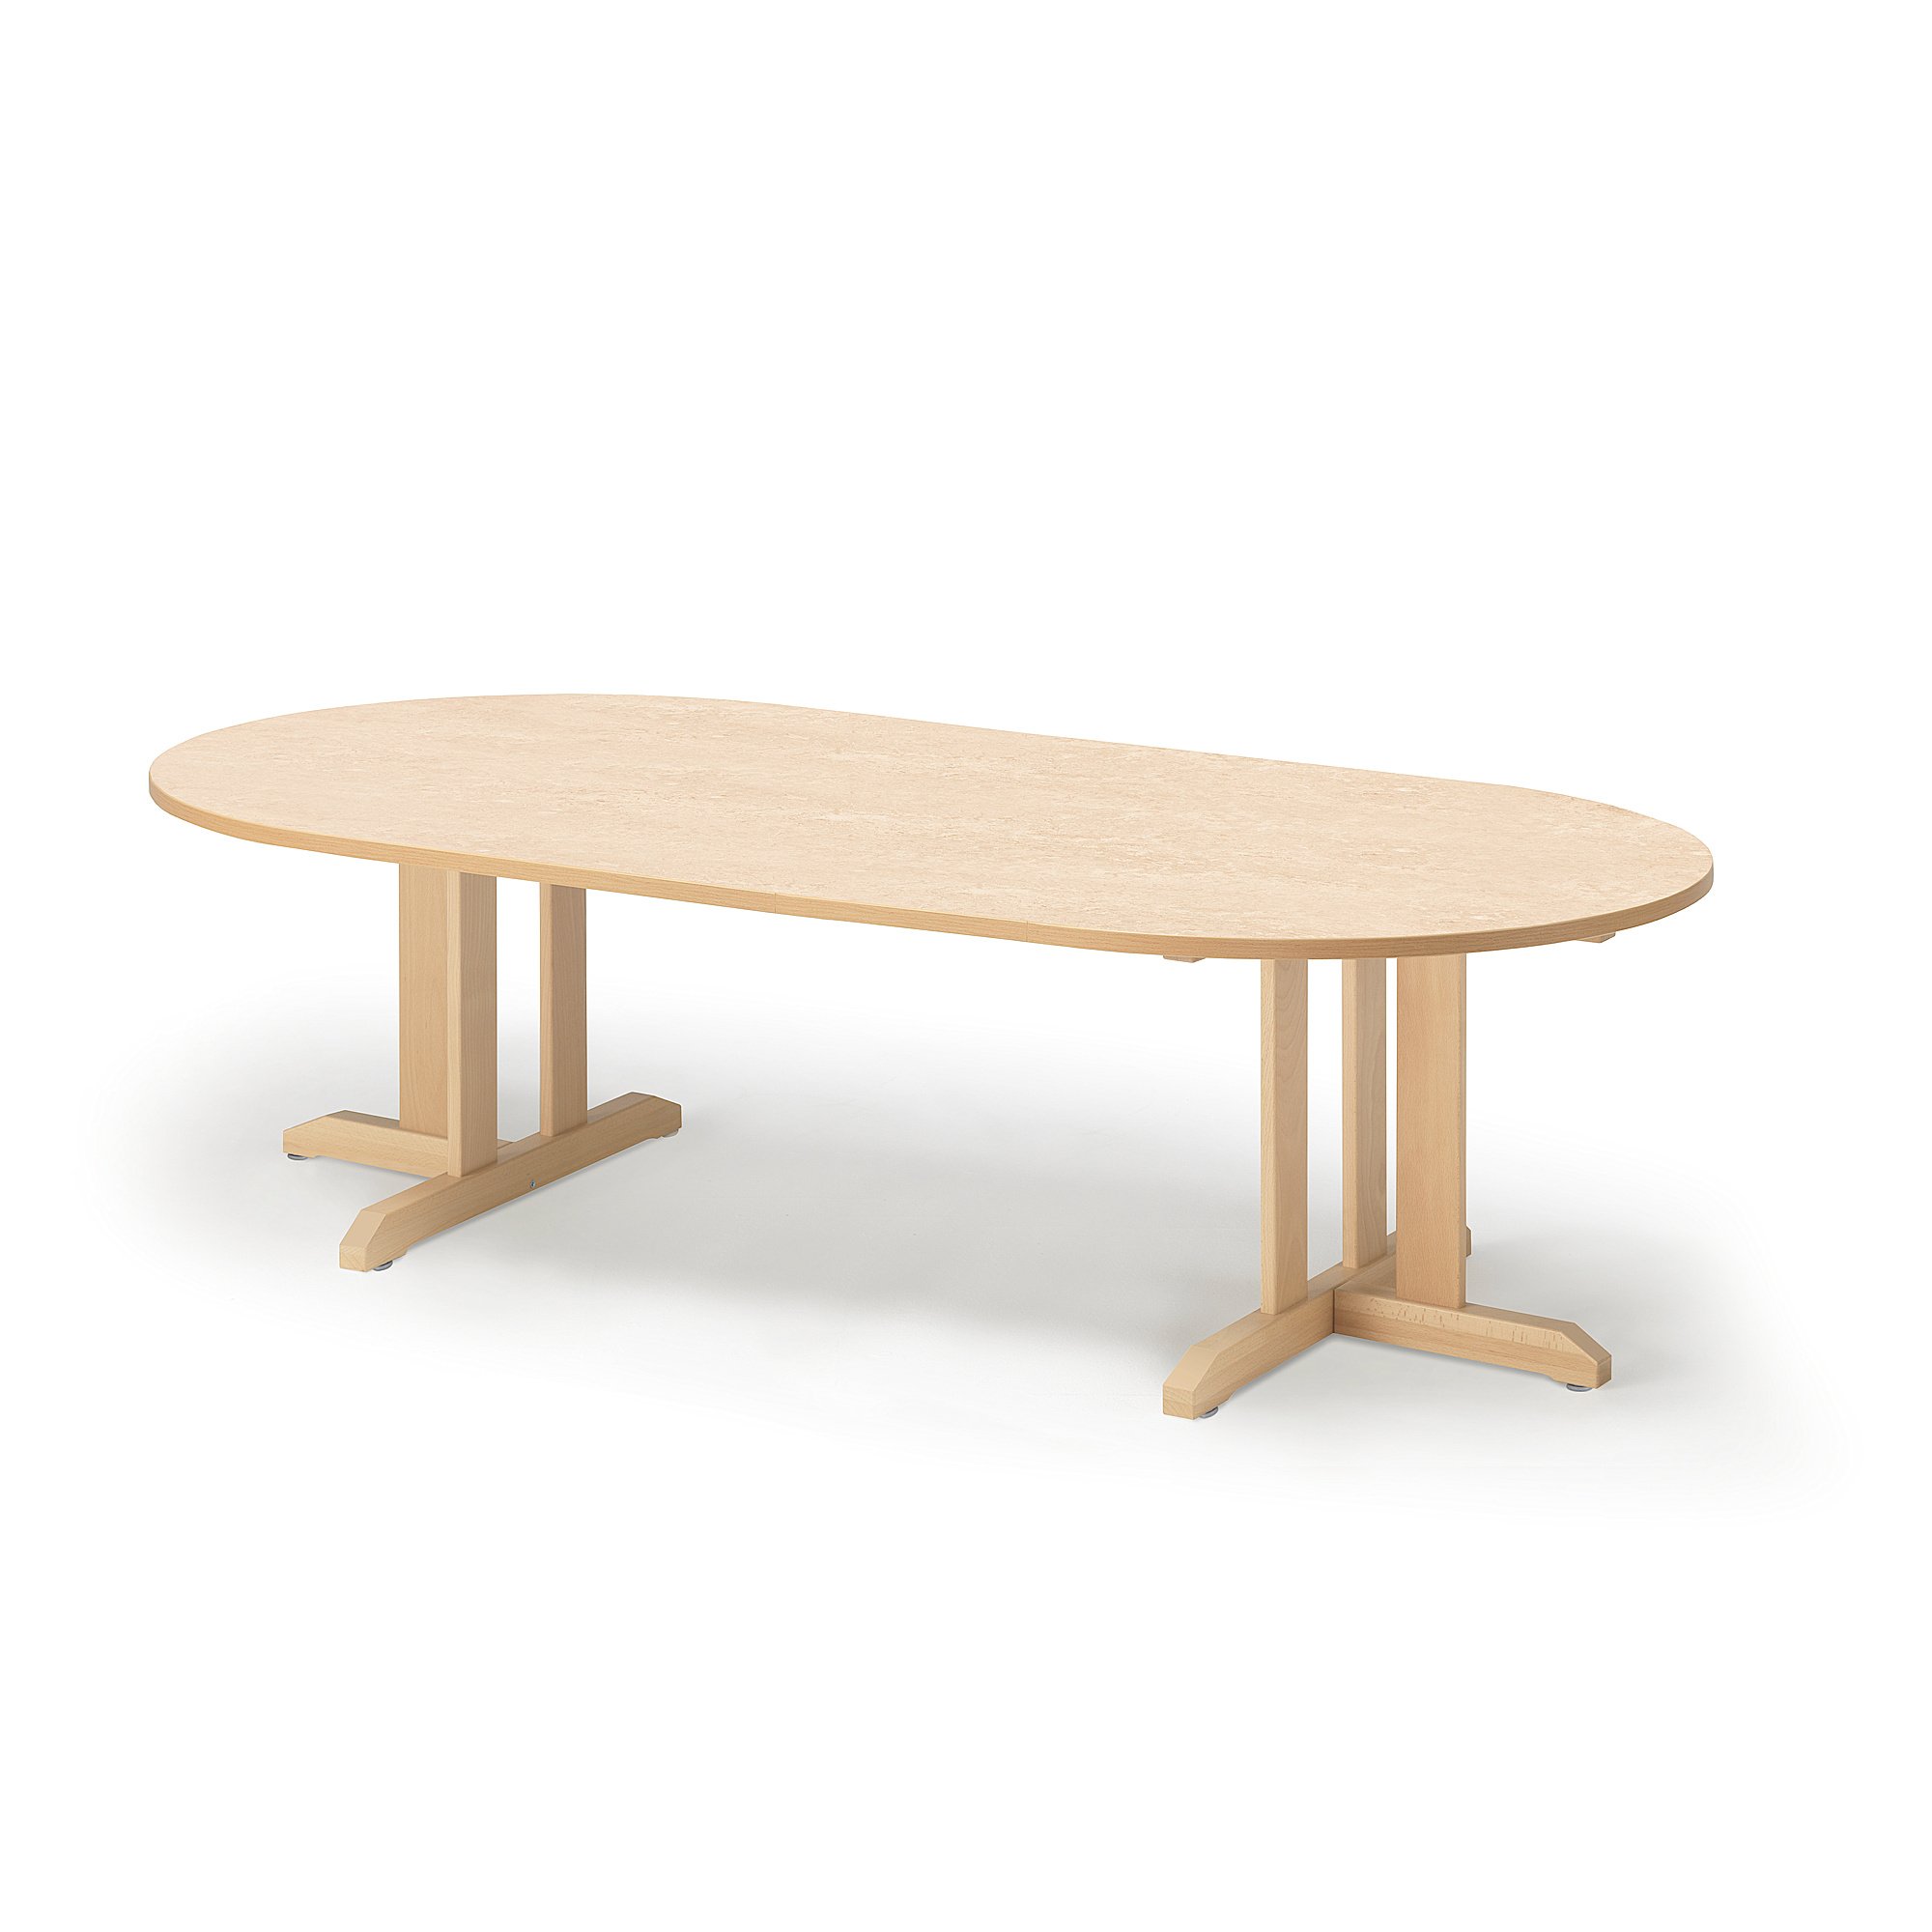 Stůl KUPOL, 2000x1000x500 mm, oválný, akustické linoleum, bříza/béžová